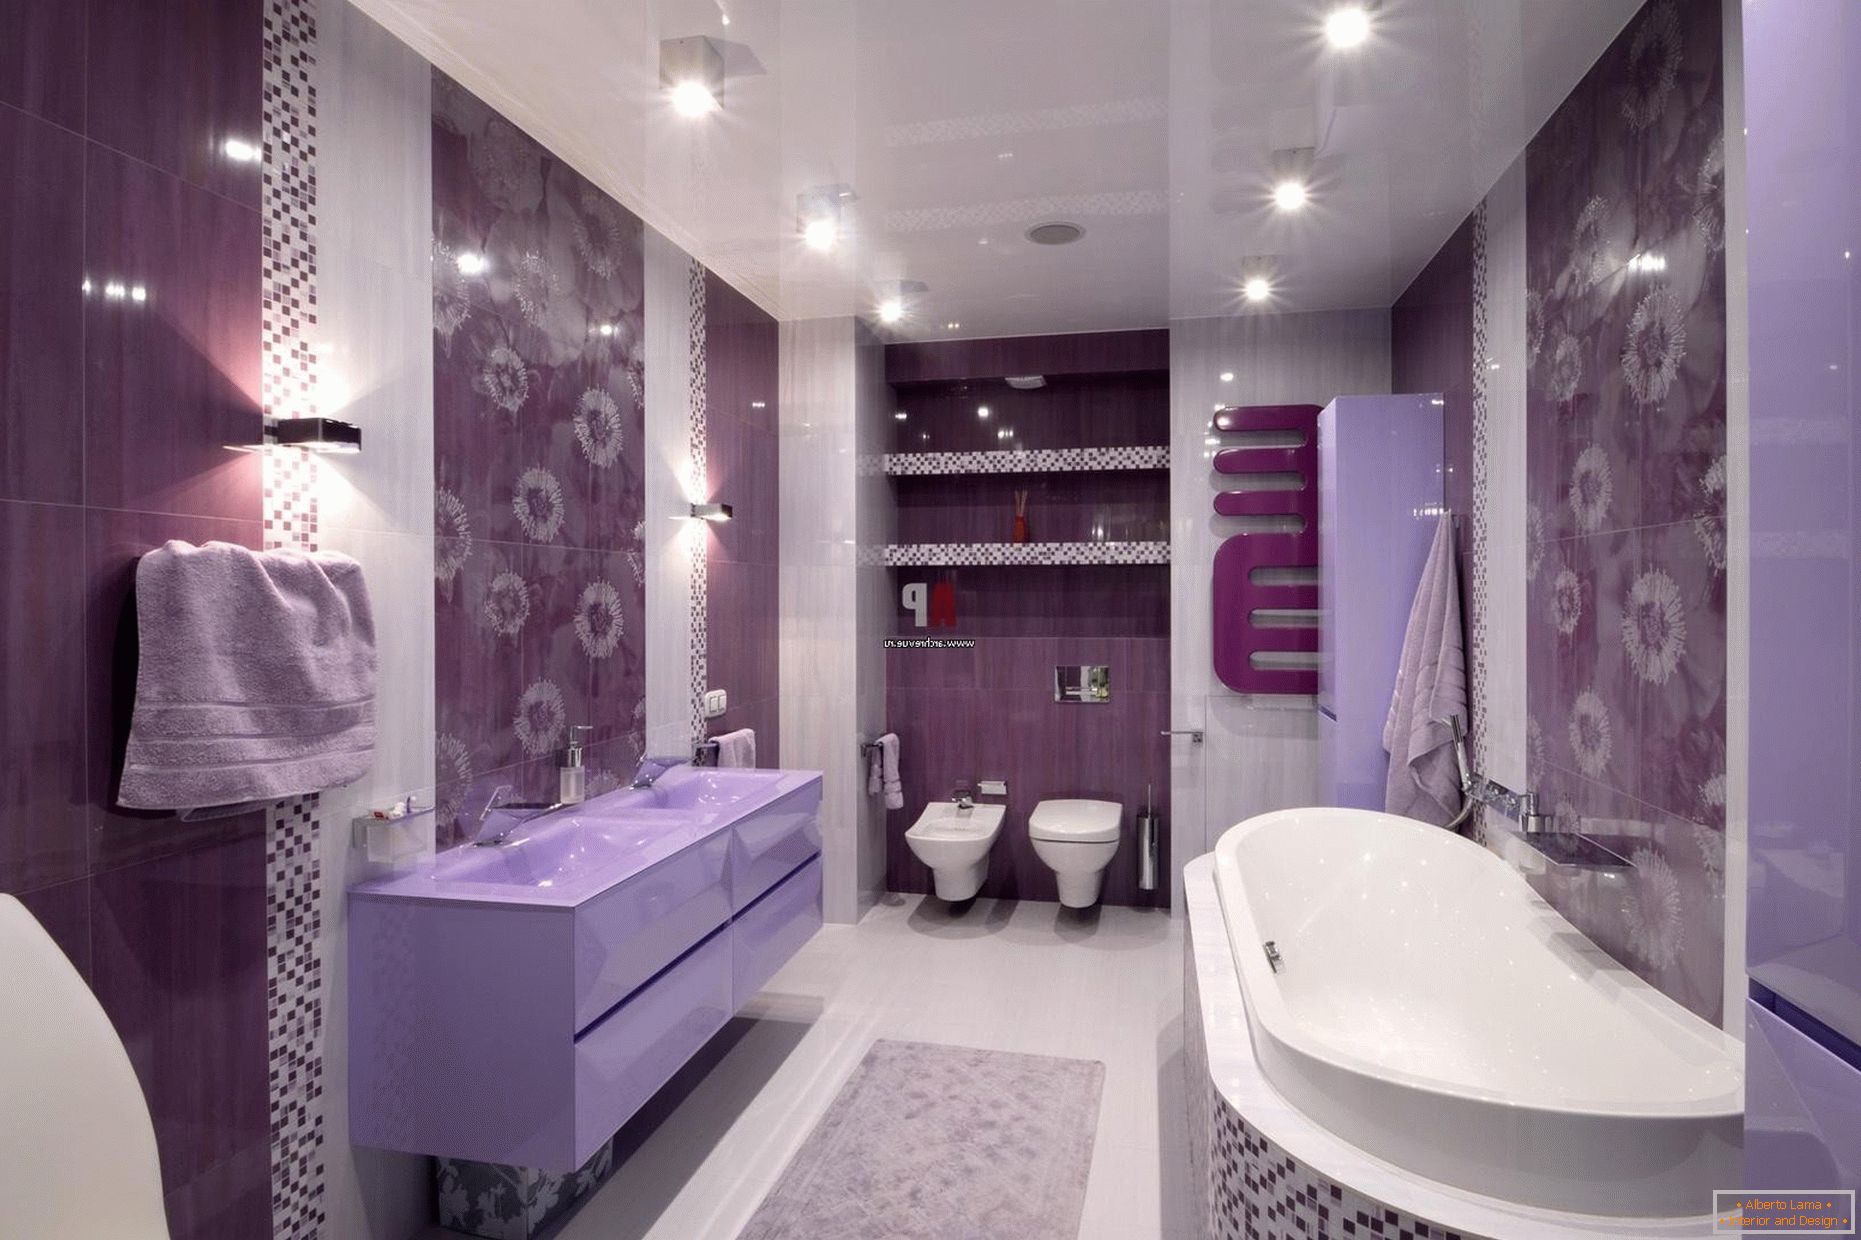 Luxuriöses Design des Badezimmers in lila Blumen